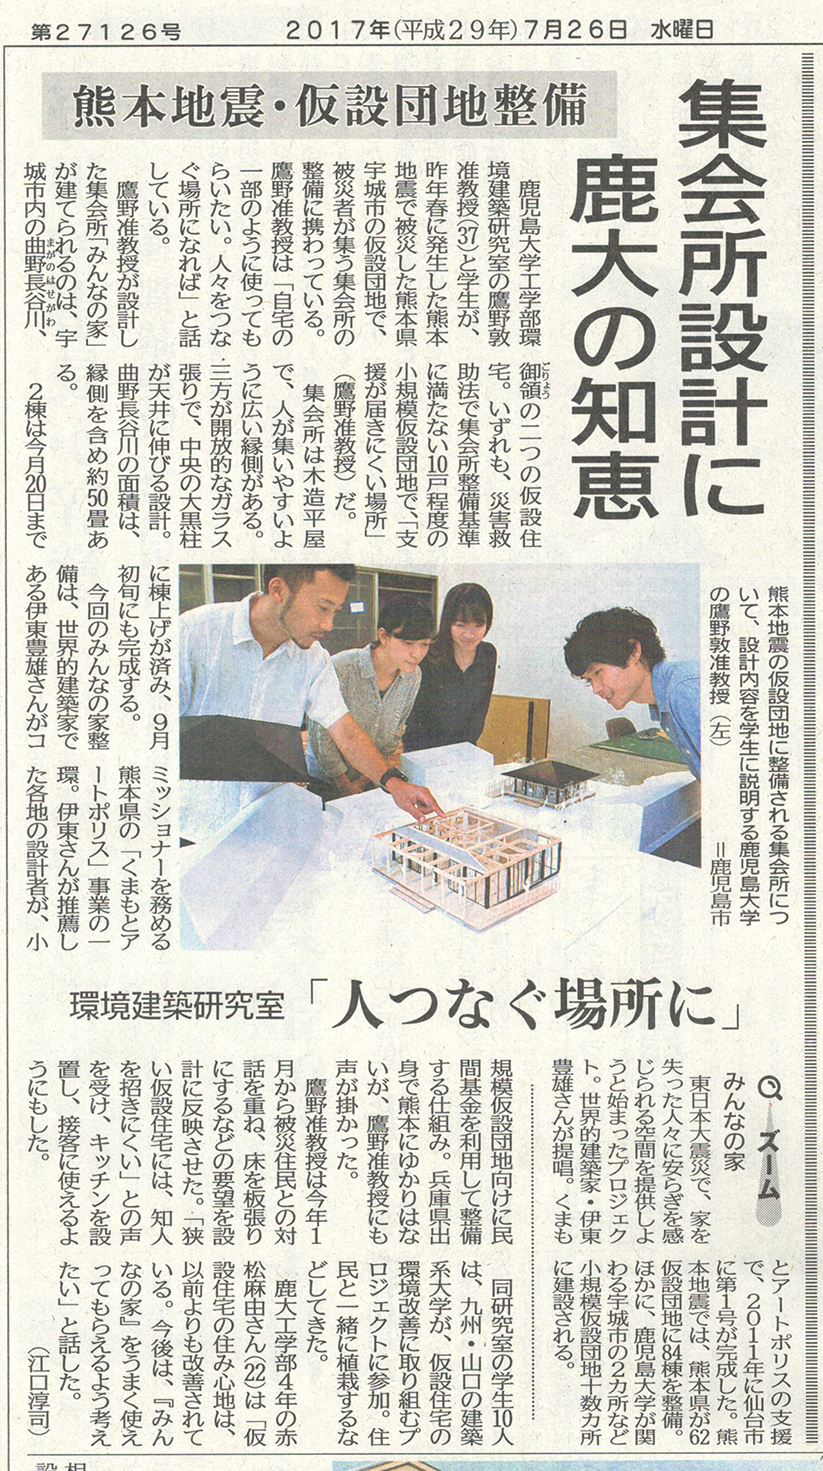 南日本新聞１面に鷹野研究室の取り組みが紹介されました